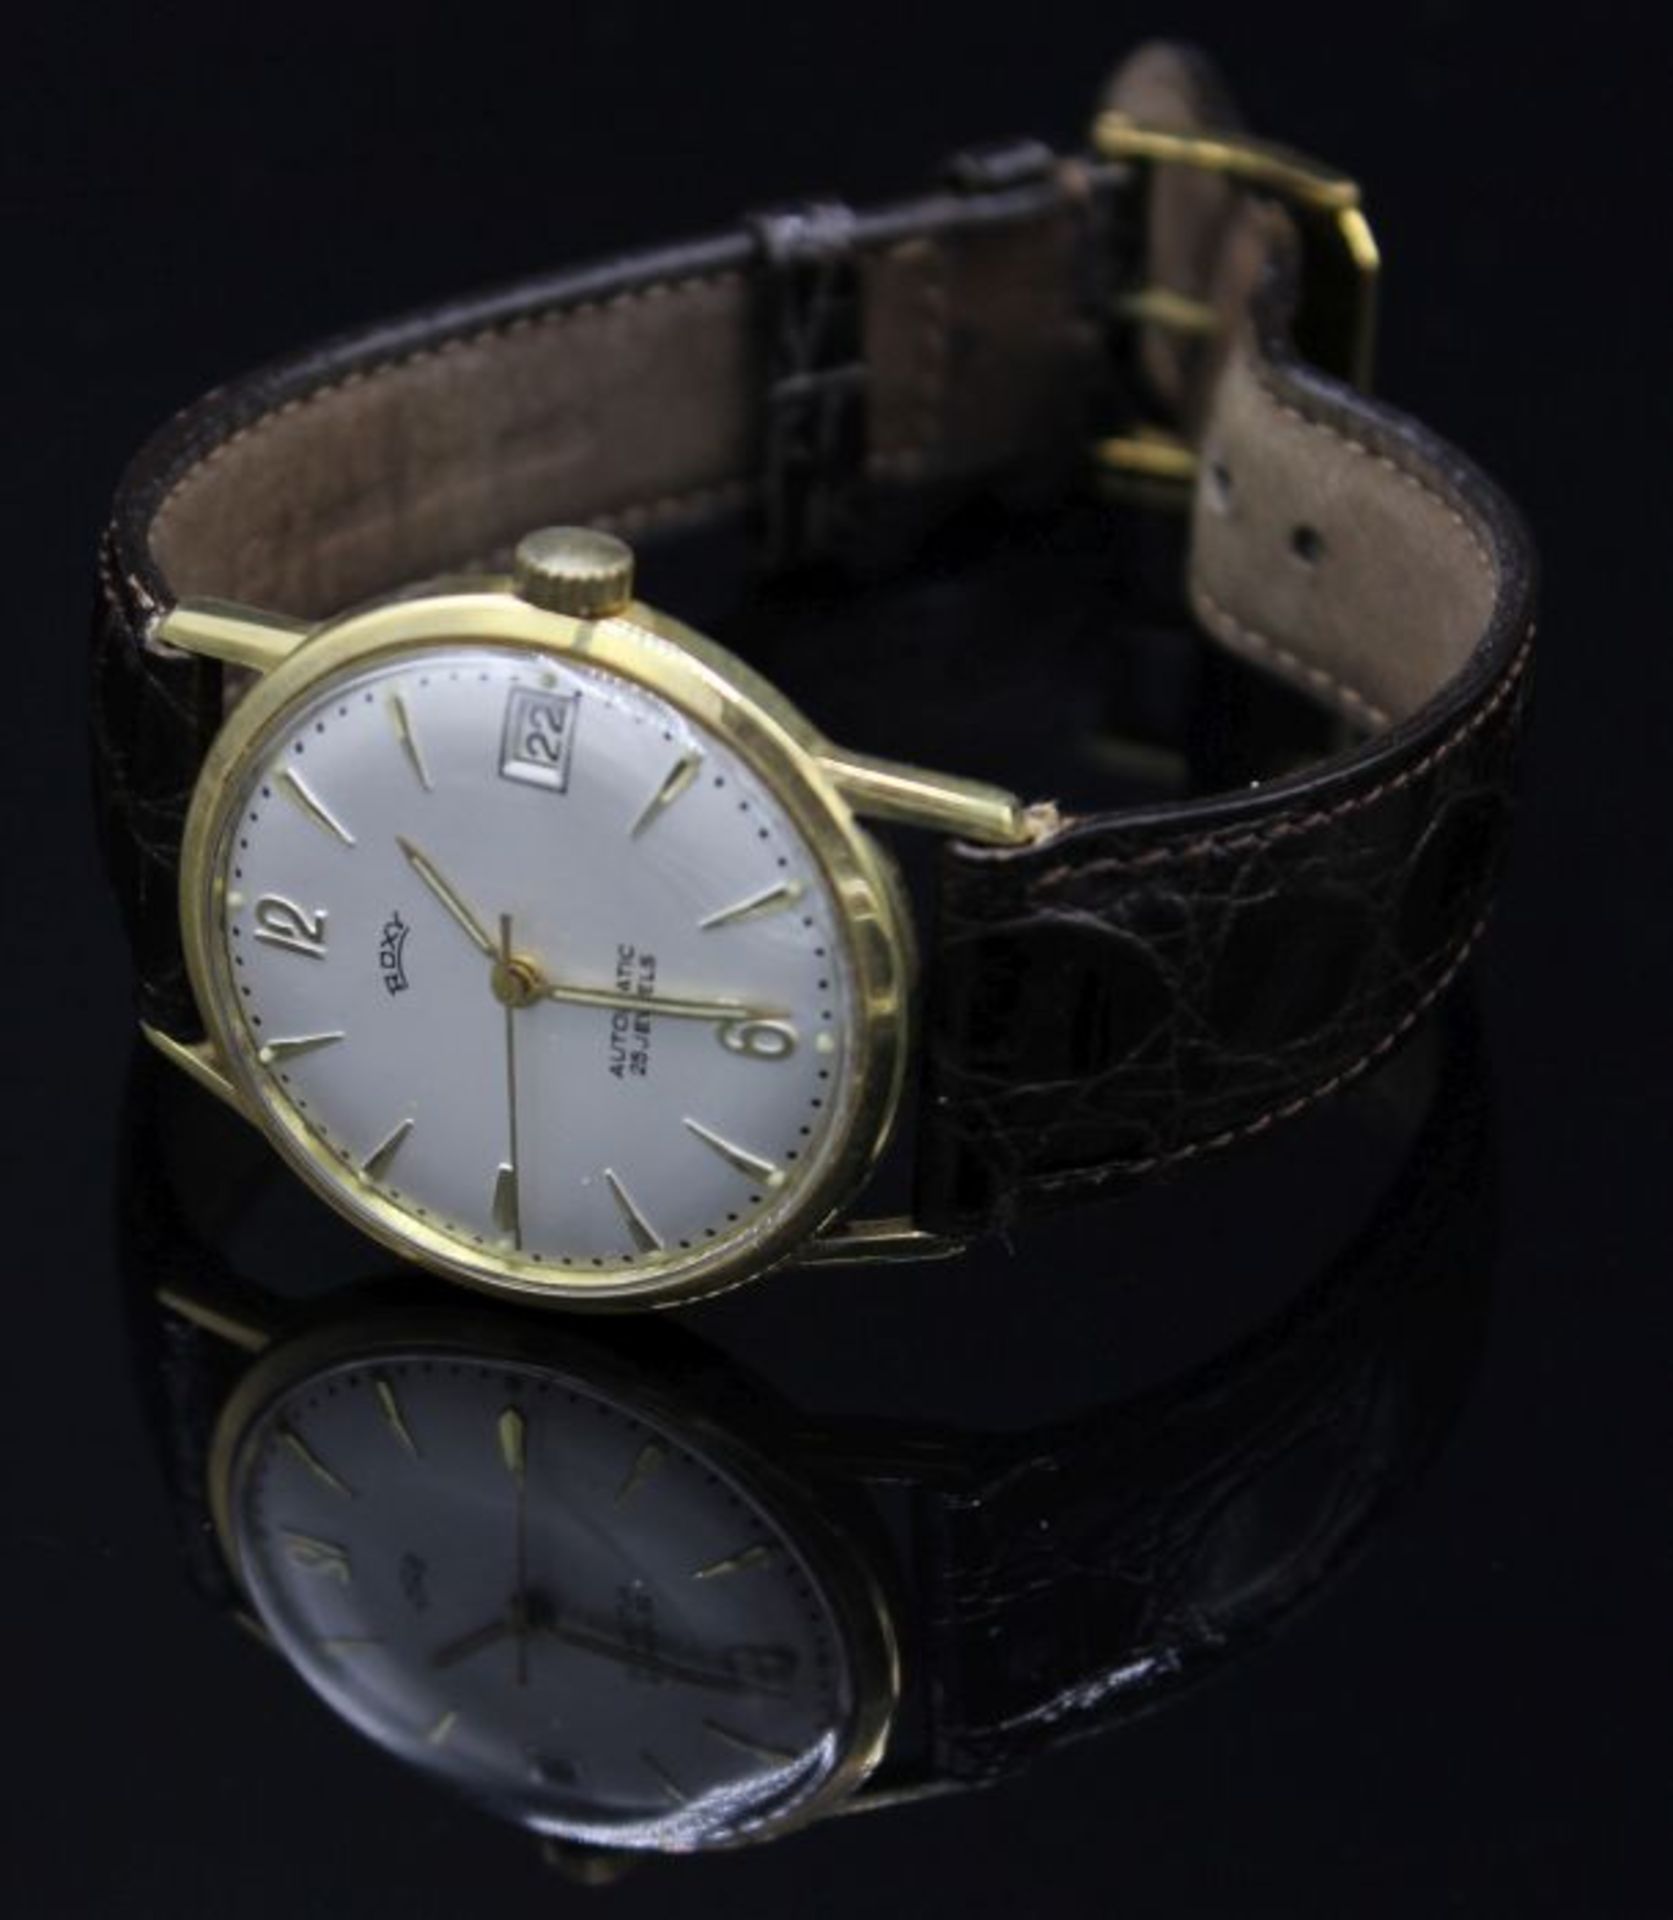 Goldene Armbanduhr - Marke Roxy im Gehäuse Rückdeckel gest. 585, RP in Raute und Krone,